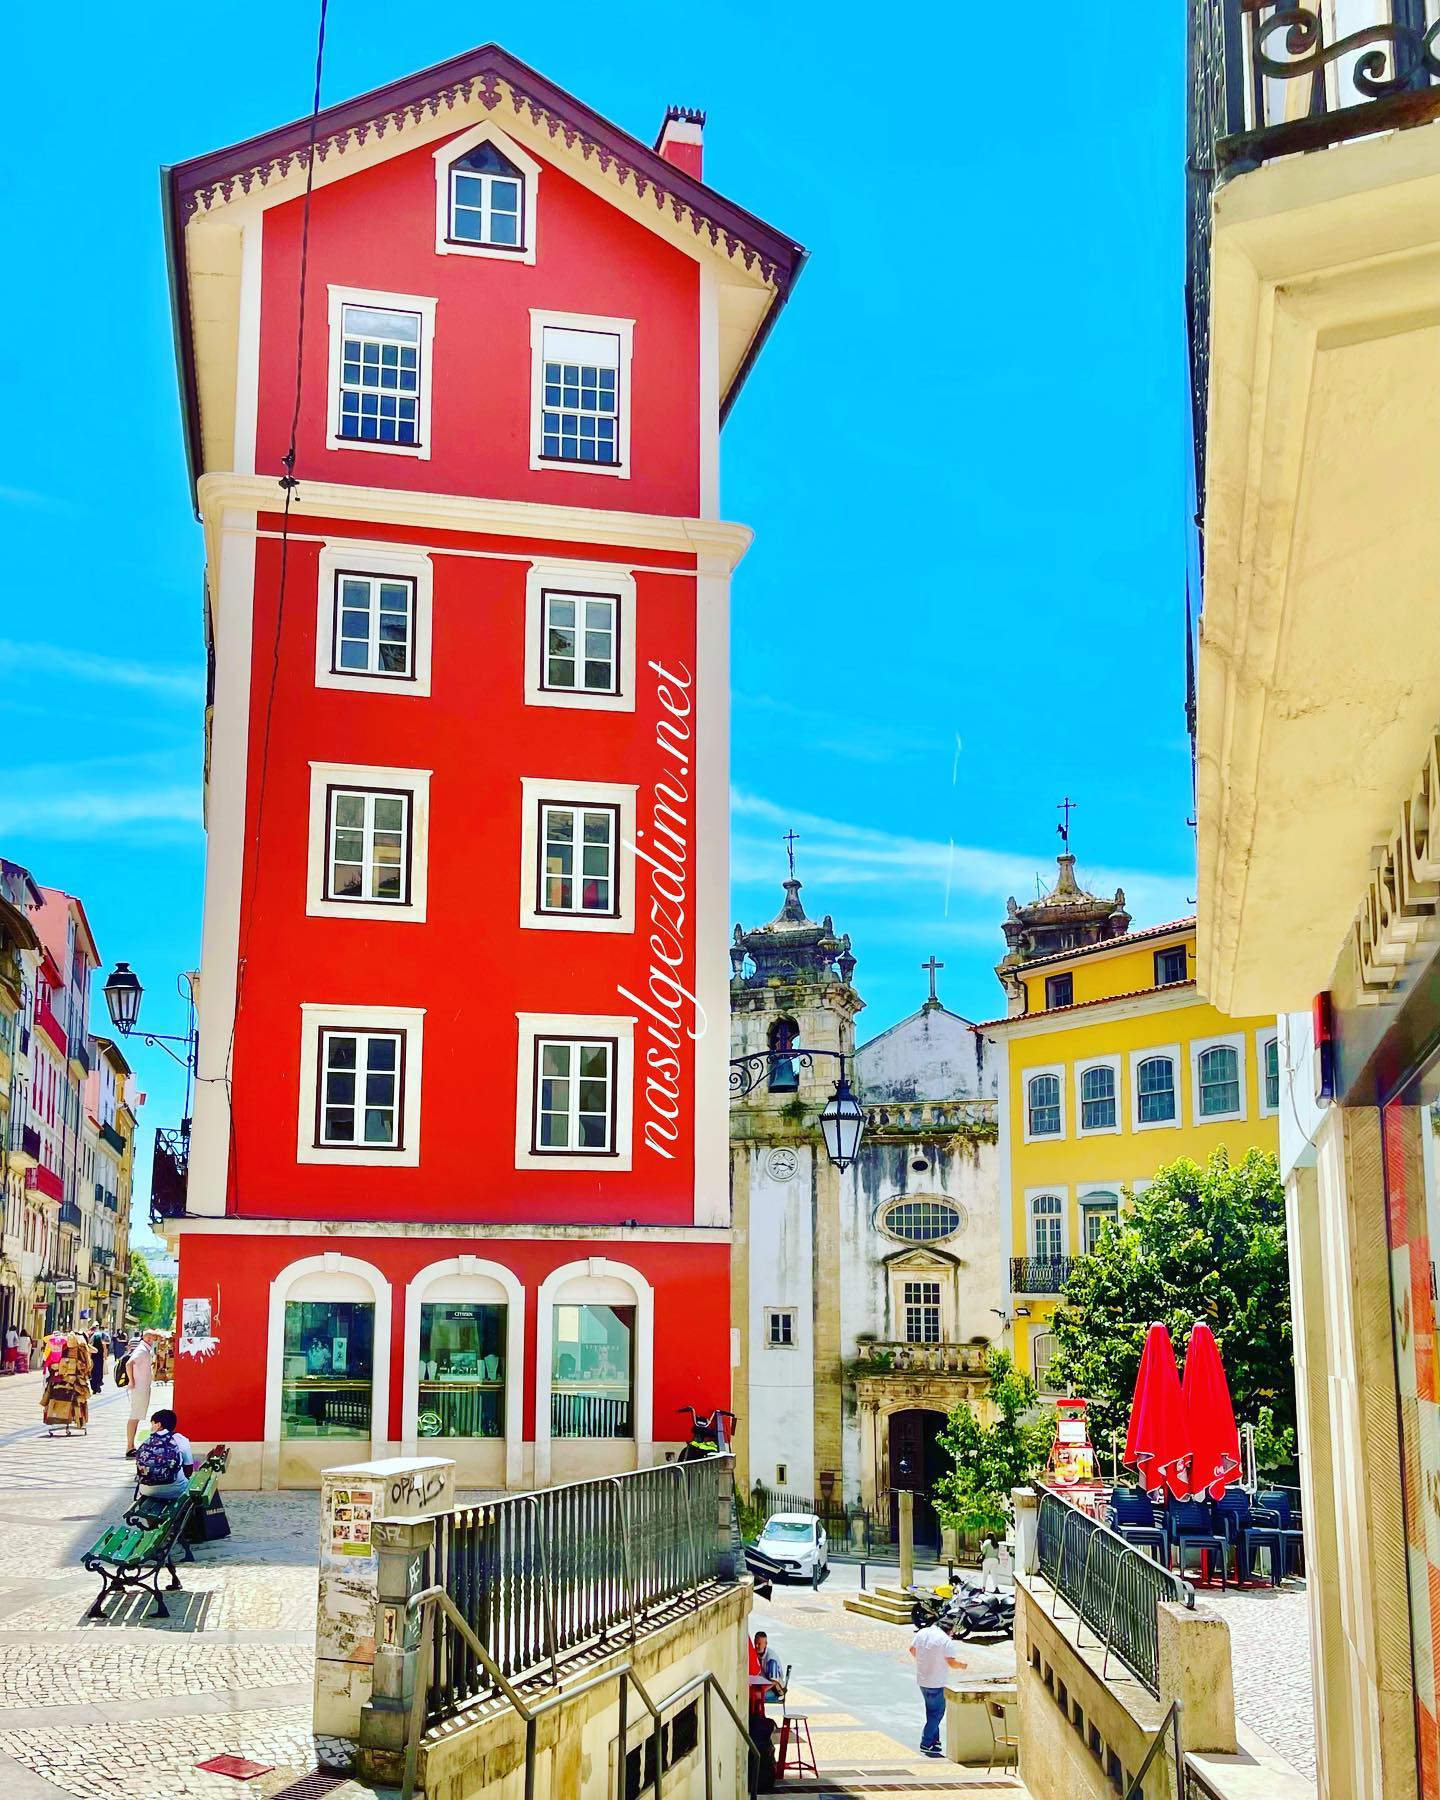 Rua Ferreira Borges, Coimbra’nın alışveriş caddesi. Üniversitesi. .
. .
#coimbra #portugal #nasilgezdim #haftasonu 🇵🇹 #benimobjektifim #milliyetrota #gezimanya #hurriyetseyahat #portekiz #iphoneonly #seyahatekspresi #seyahat #geziyorum #bevisuallyinspired #gezginfest #gezginfoto #passionpassport #iphonography #ilovetravelling #wonderful_places #nereyegitsek #haftasonukaçamağı #gezenlerden #seyahataşkı #discoverearth #gezelimgörelim #gezginstagram #wordcaptures #seetheworld #mytravelgram